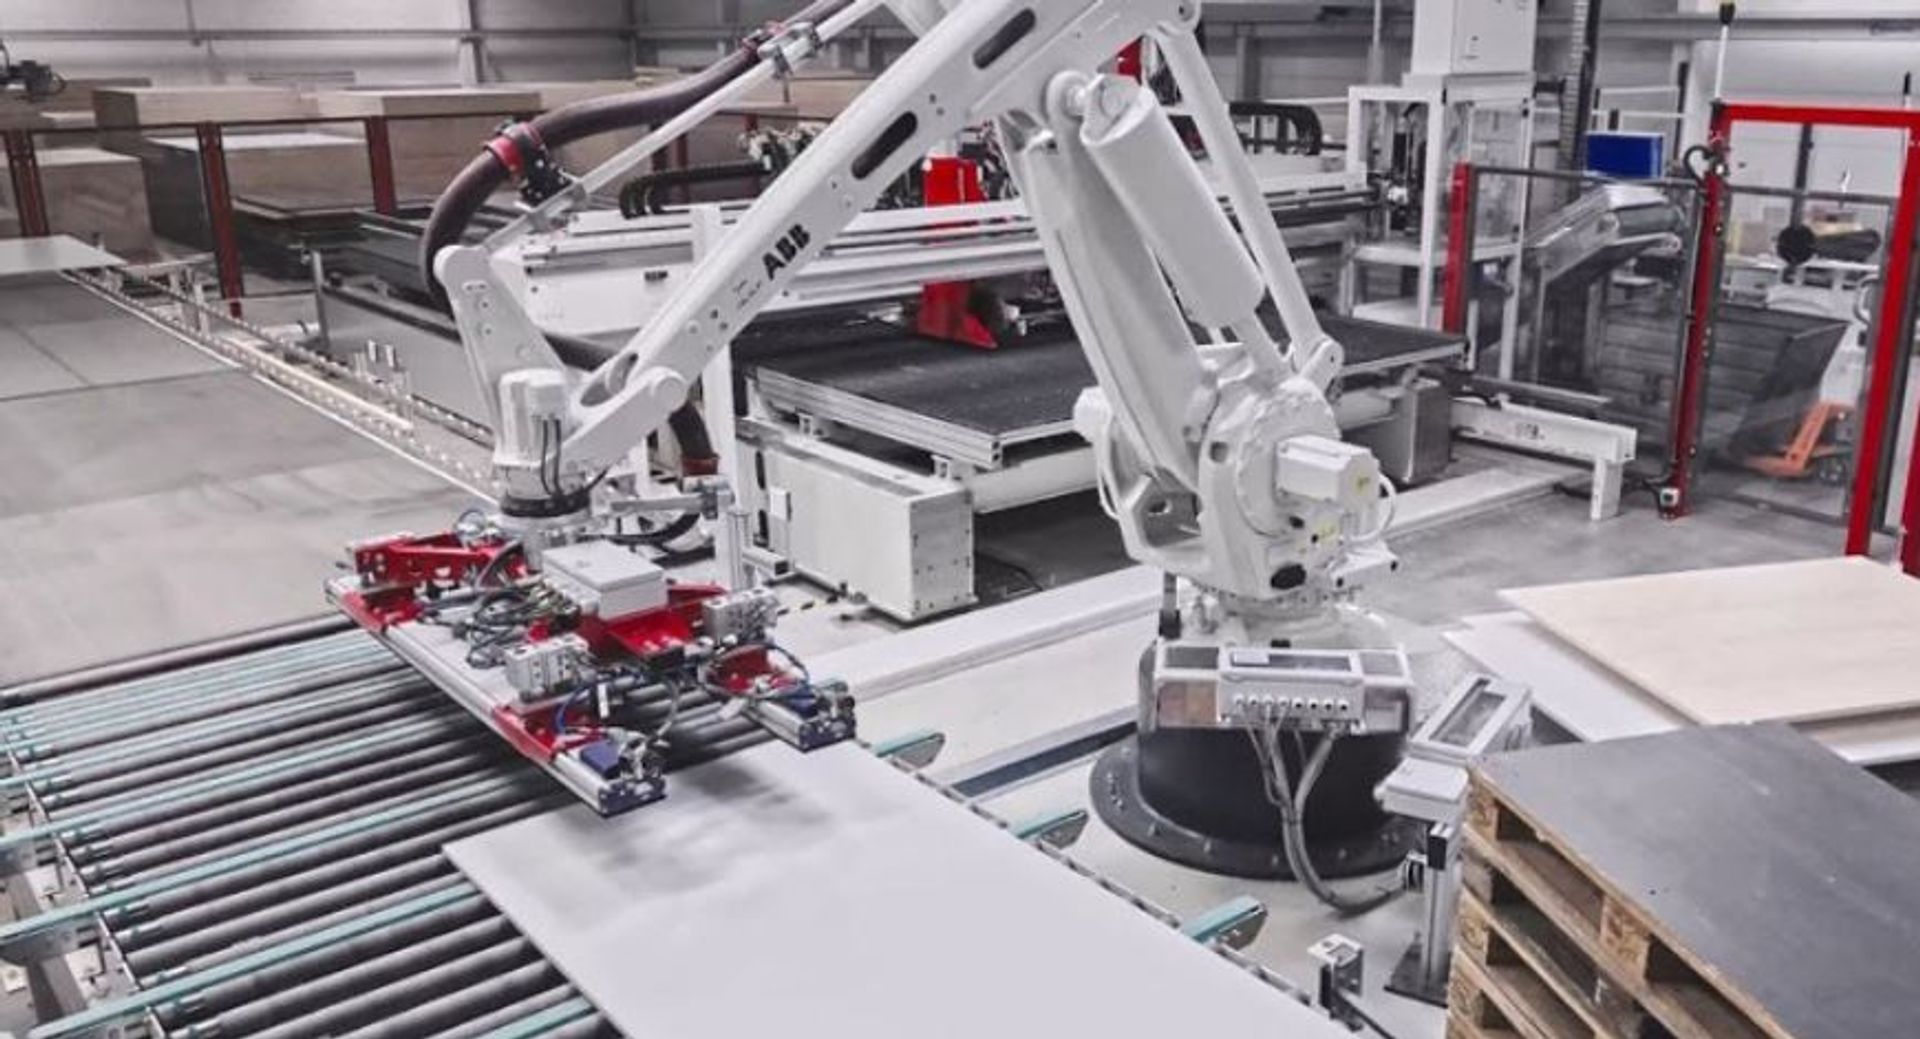 Polska firma INFORNI wybuduje dużą, zautomatyzowaną fabrykę mebli kuchennych na Podkarpaciu